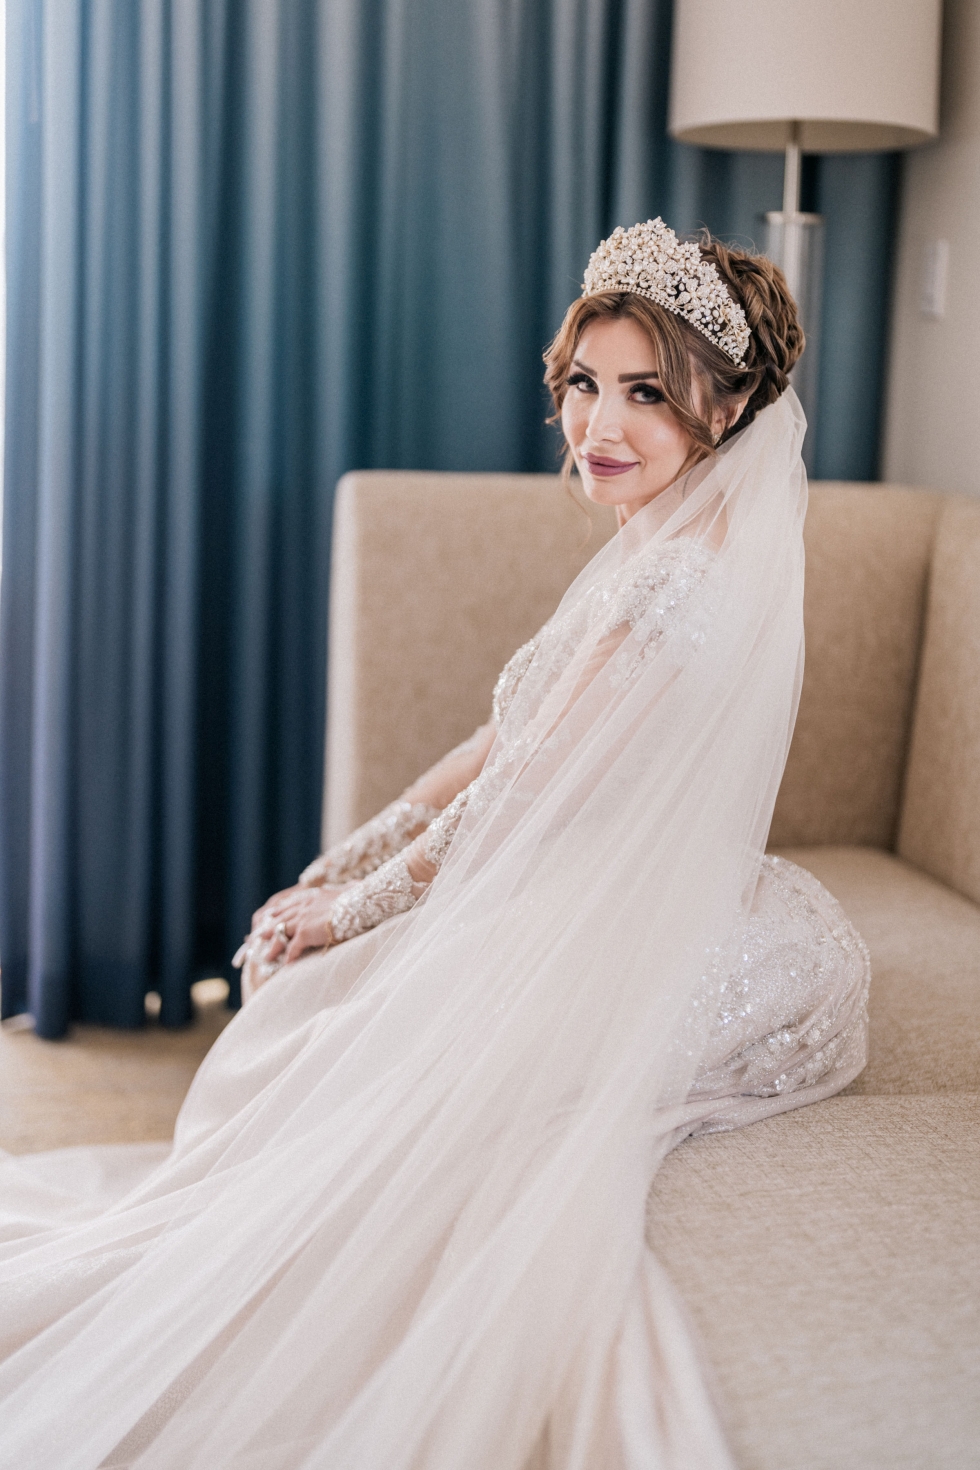 An Unforgettable Arab Wedding in California